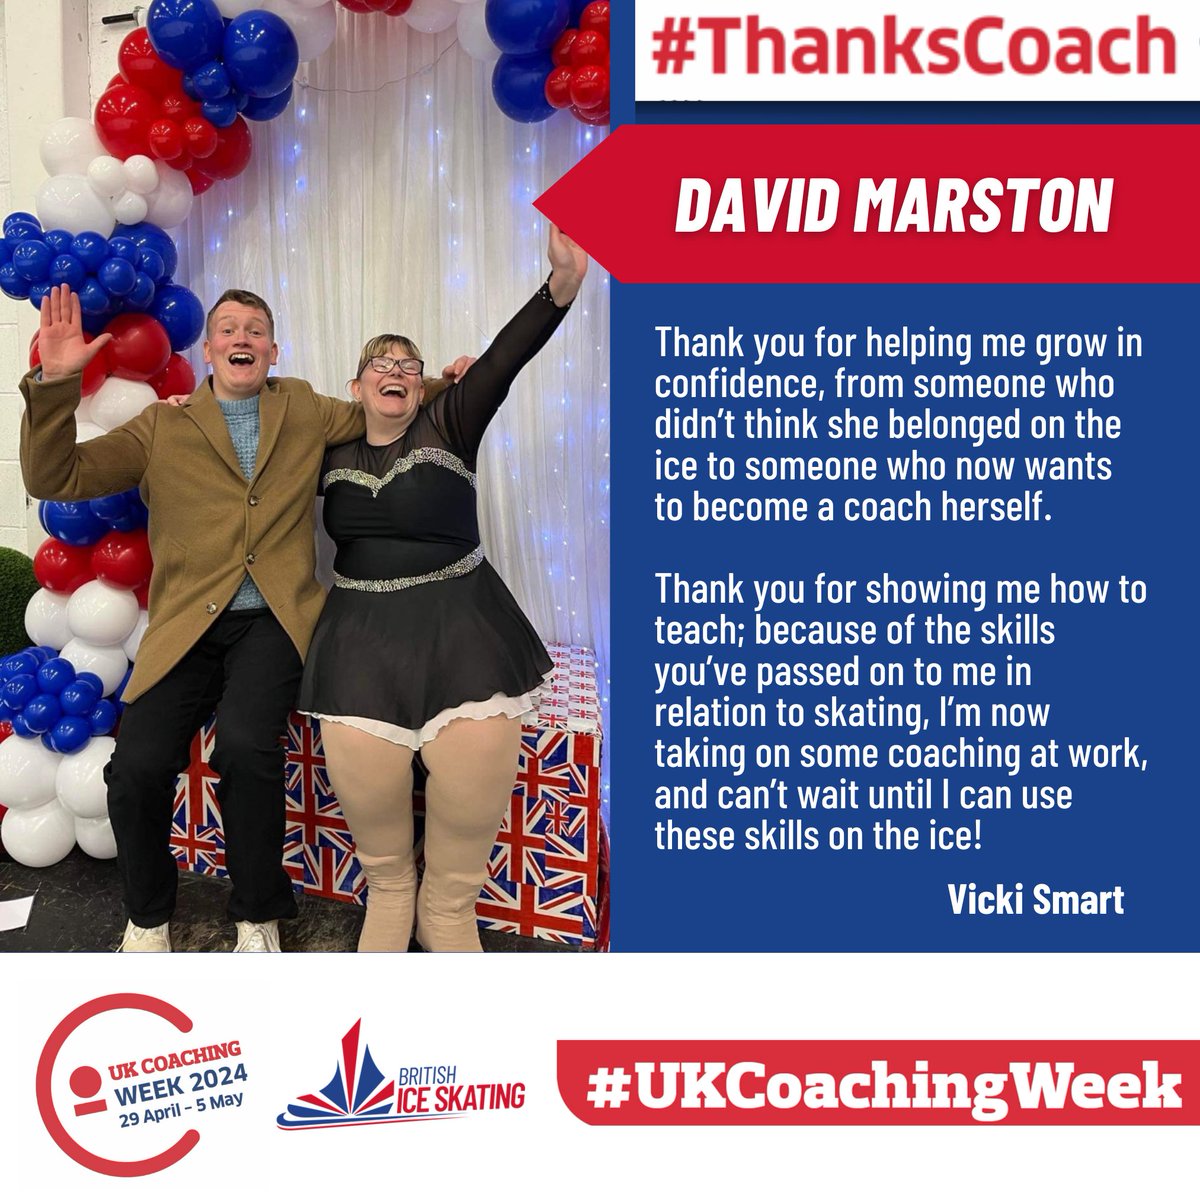 Next up for #UKCoachingWeek let's hear it for David's inspiring coaching! 👏

#ThanksCoach #UKCoachingWeek #CoachingHeroes #MakingADifference #HolisticCoaching